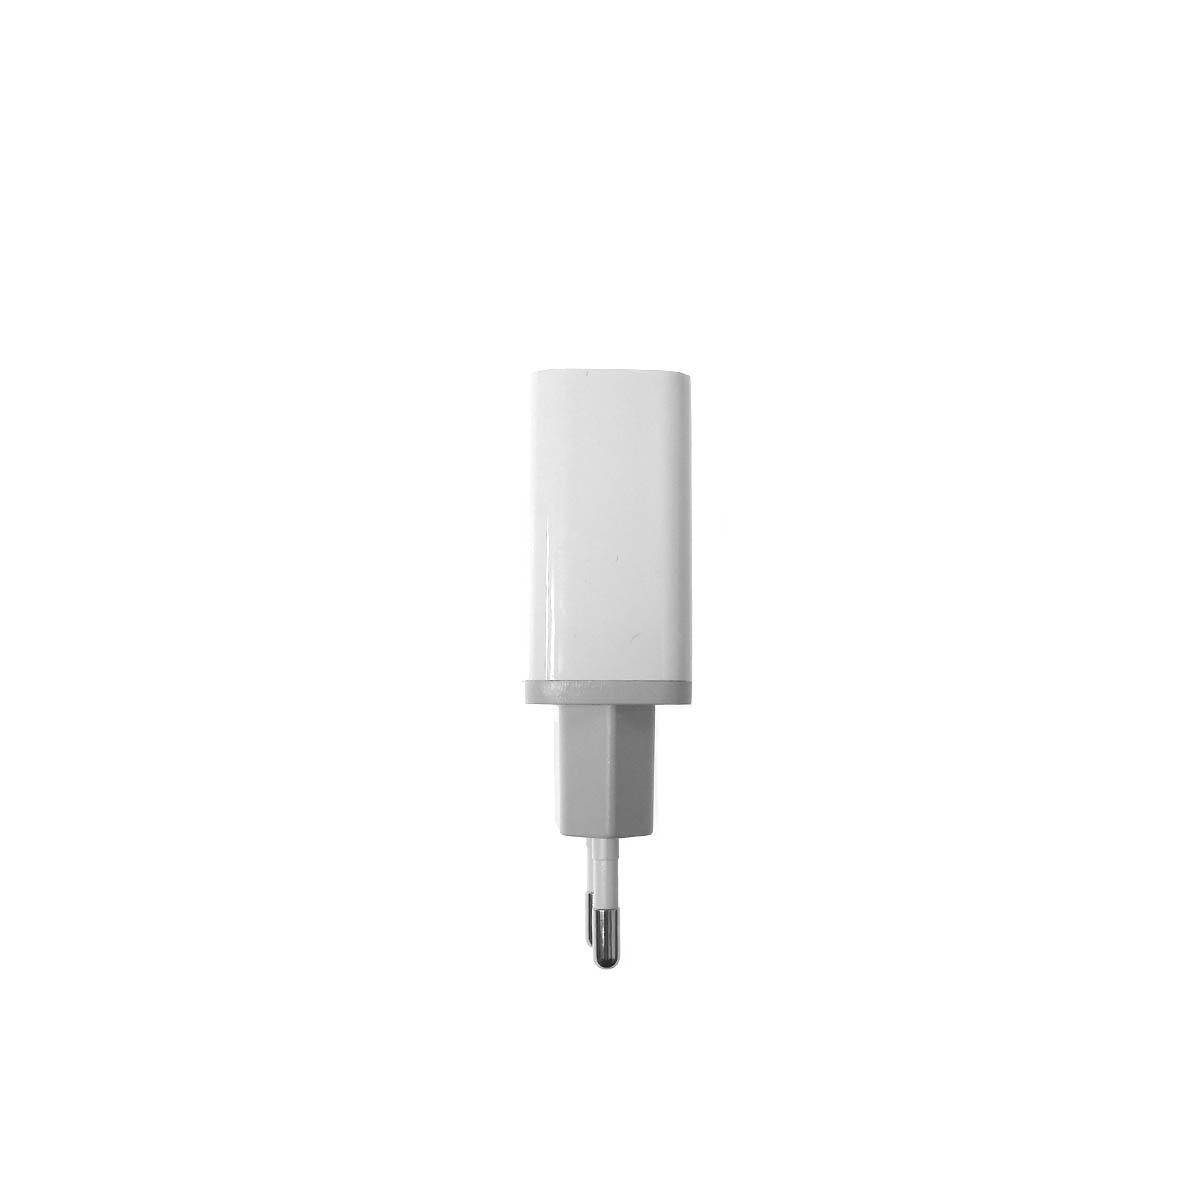 СЗУ (Сетевое зарядное устройство) EARLDOM ES-EU5 с кабелем USB Type C на Lightning 8 pin, 20W, длина 1 метр, цвет белый